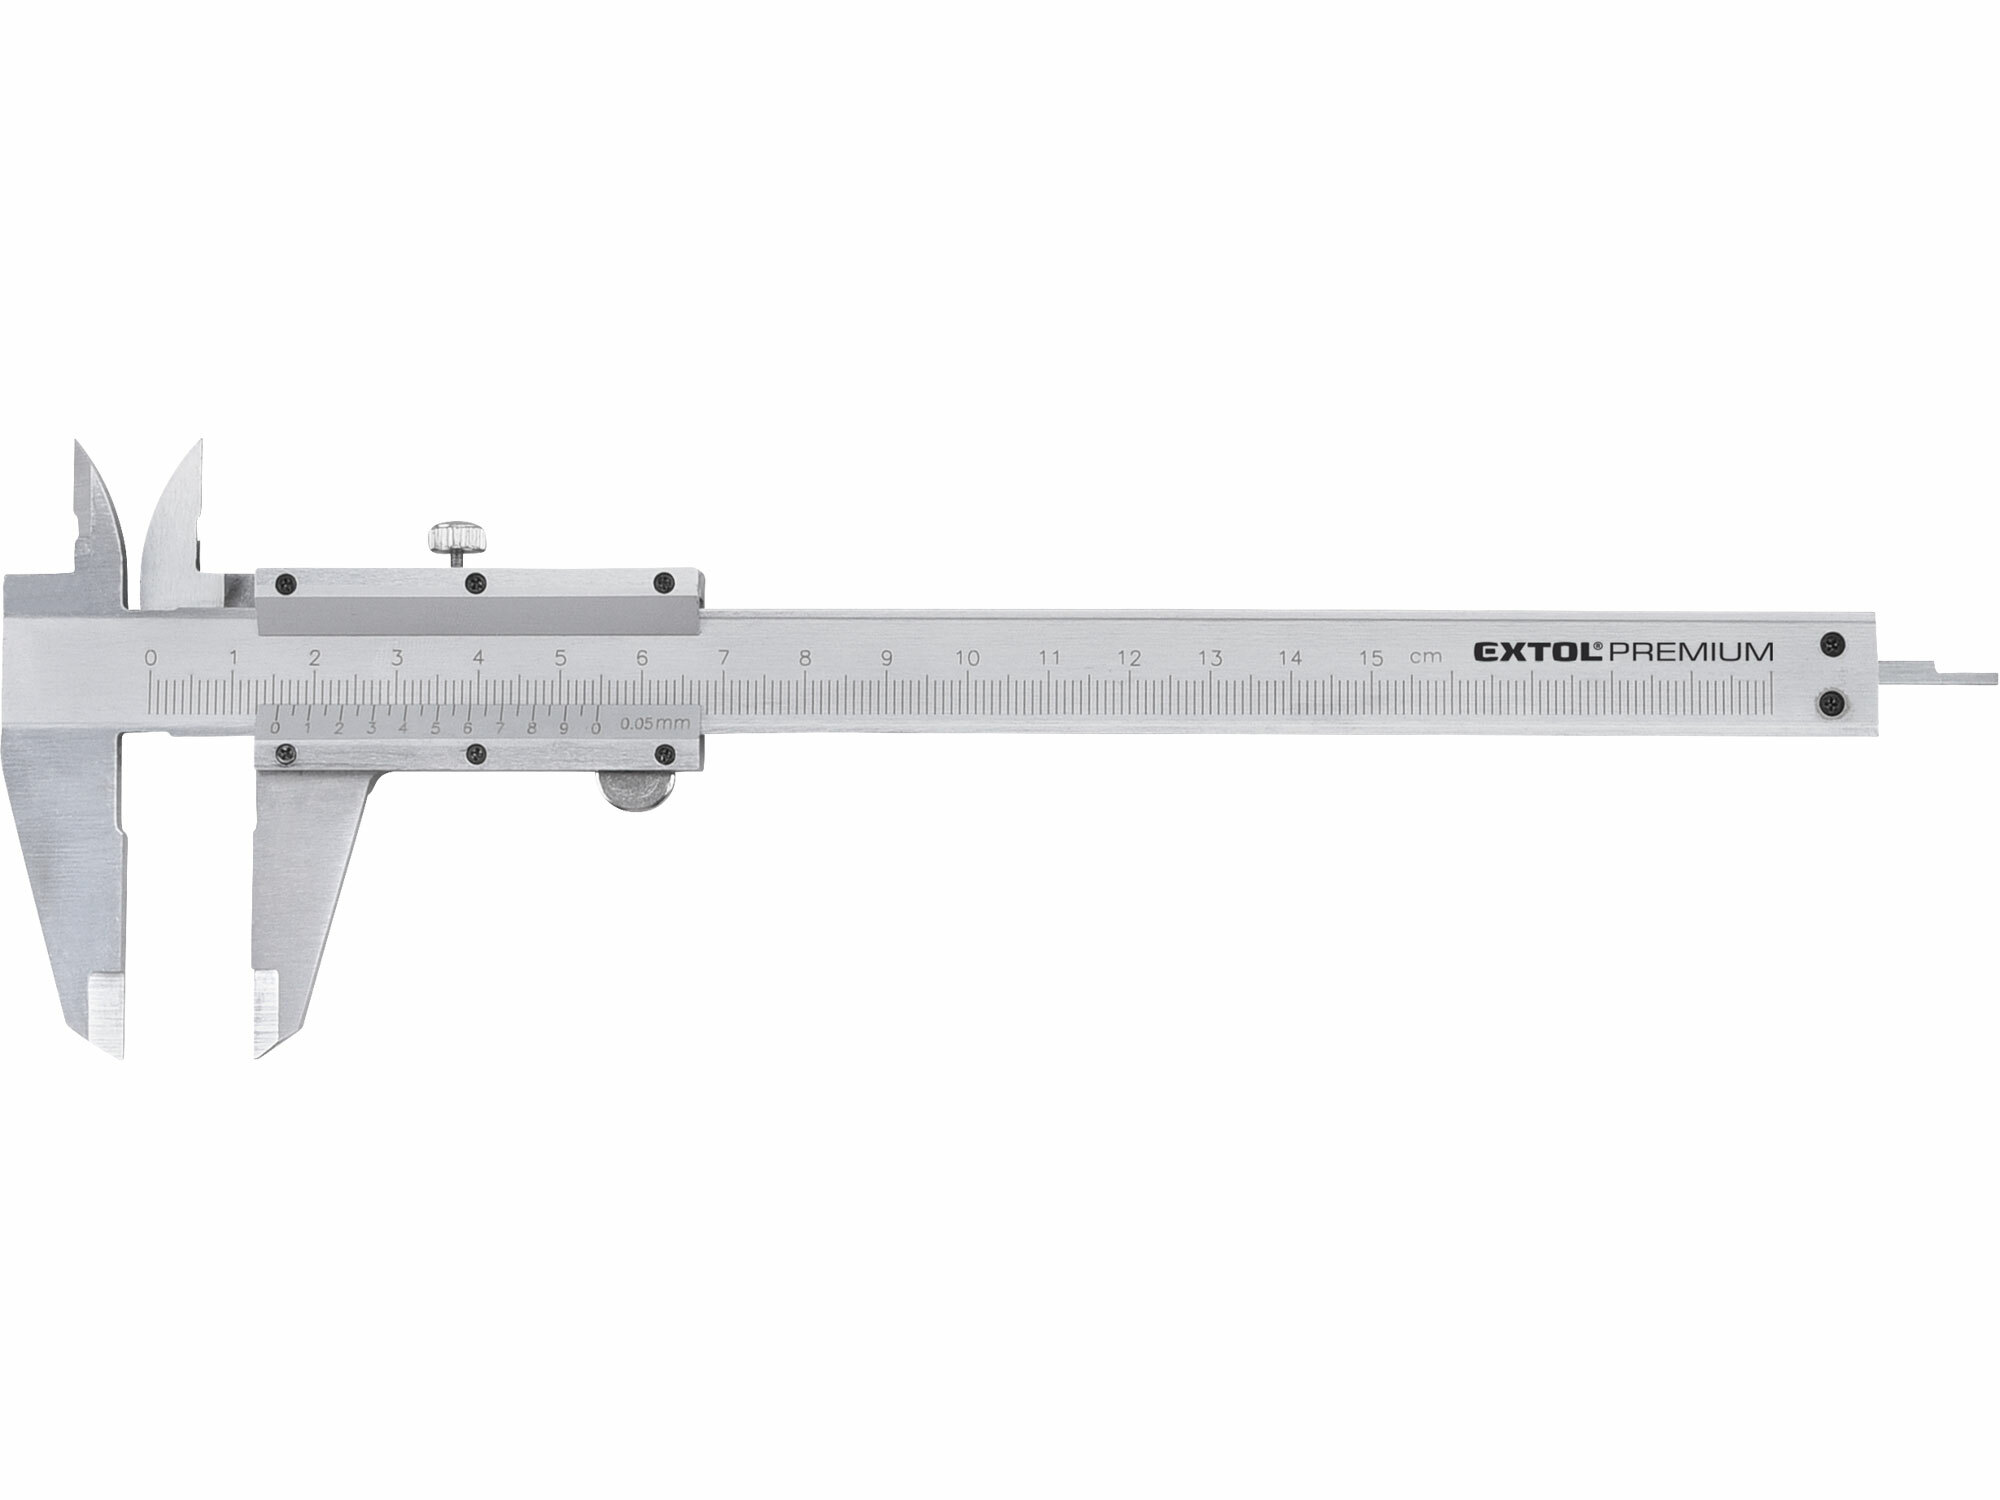 Měřítko posuvné kovové, 0-150mm